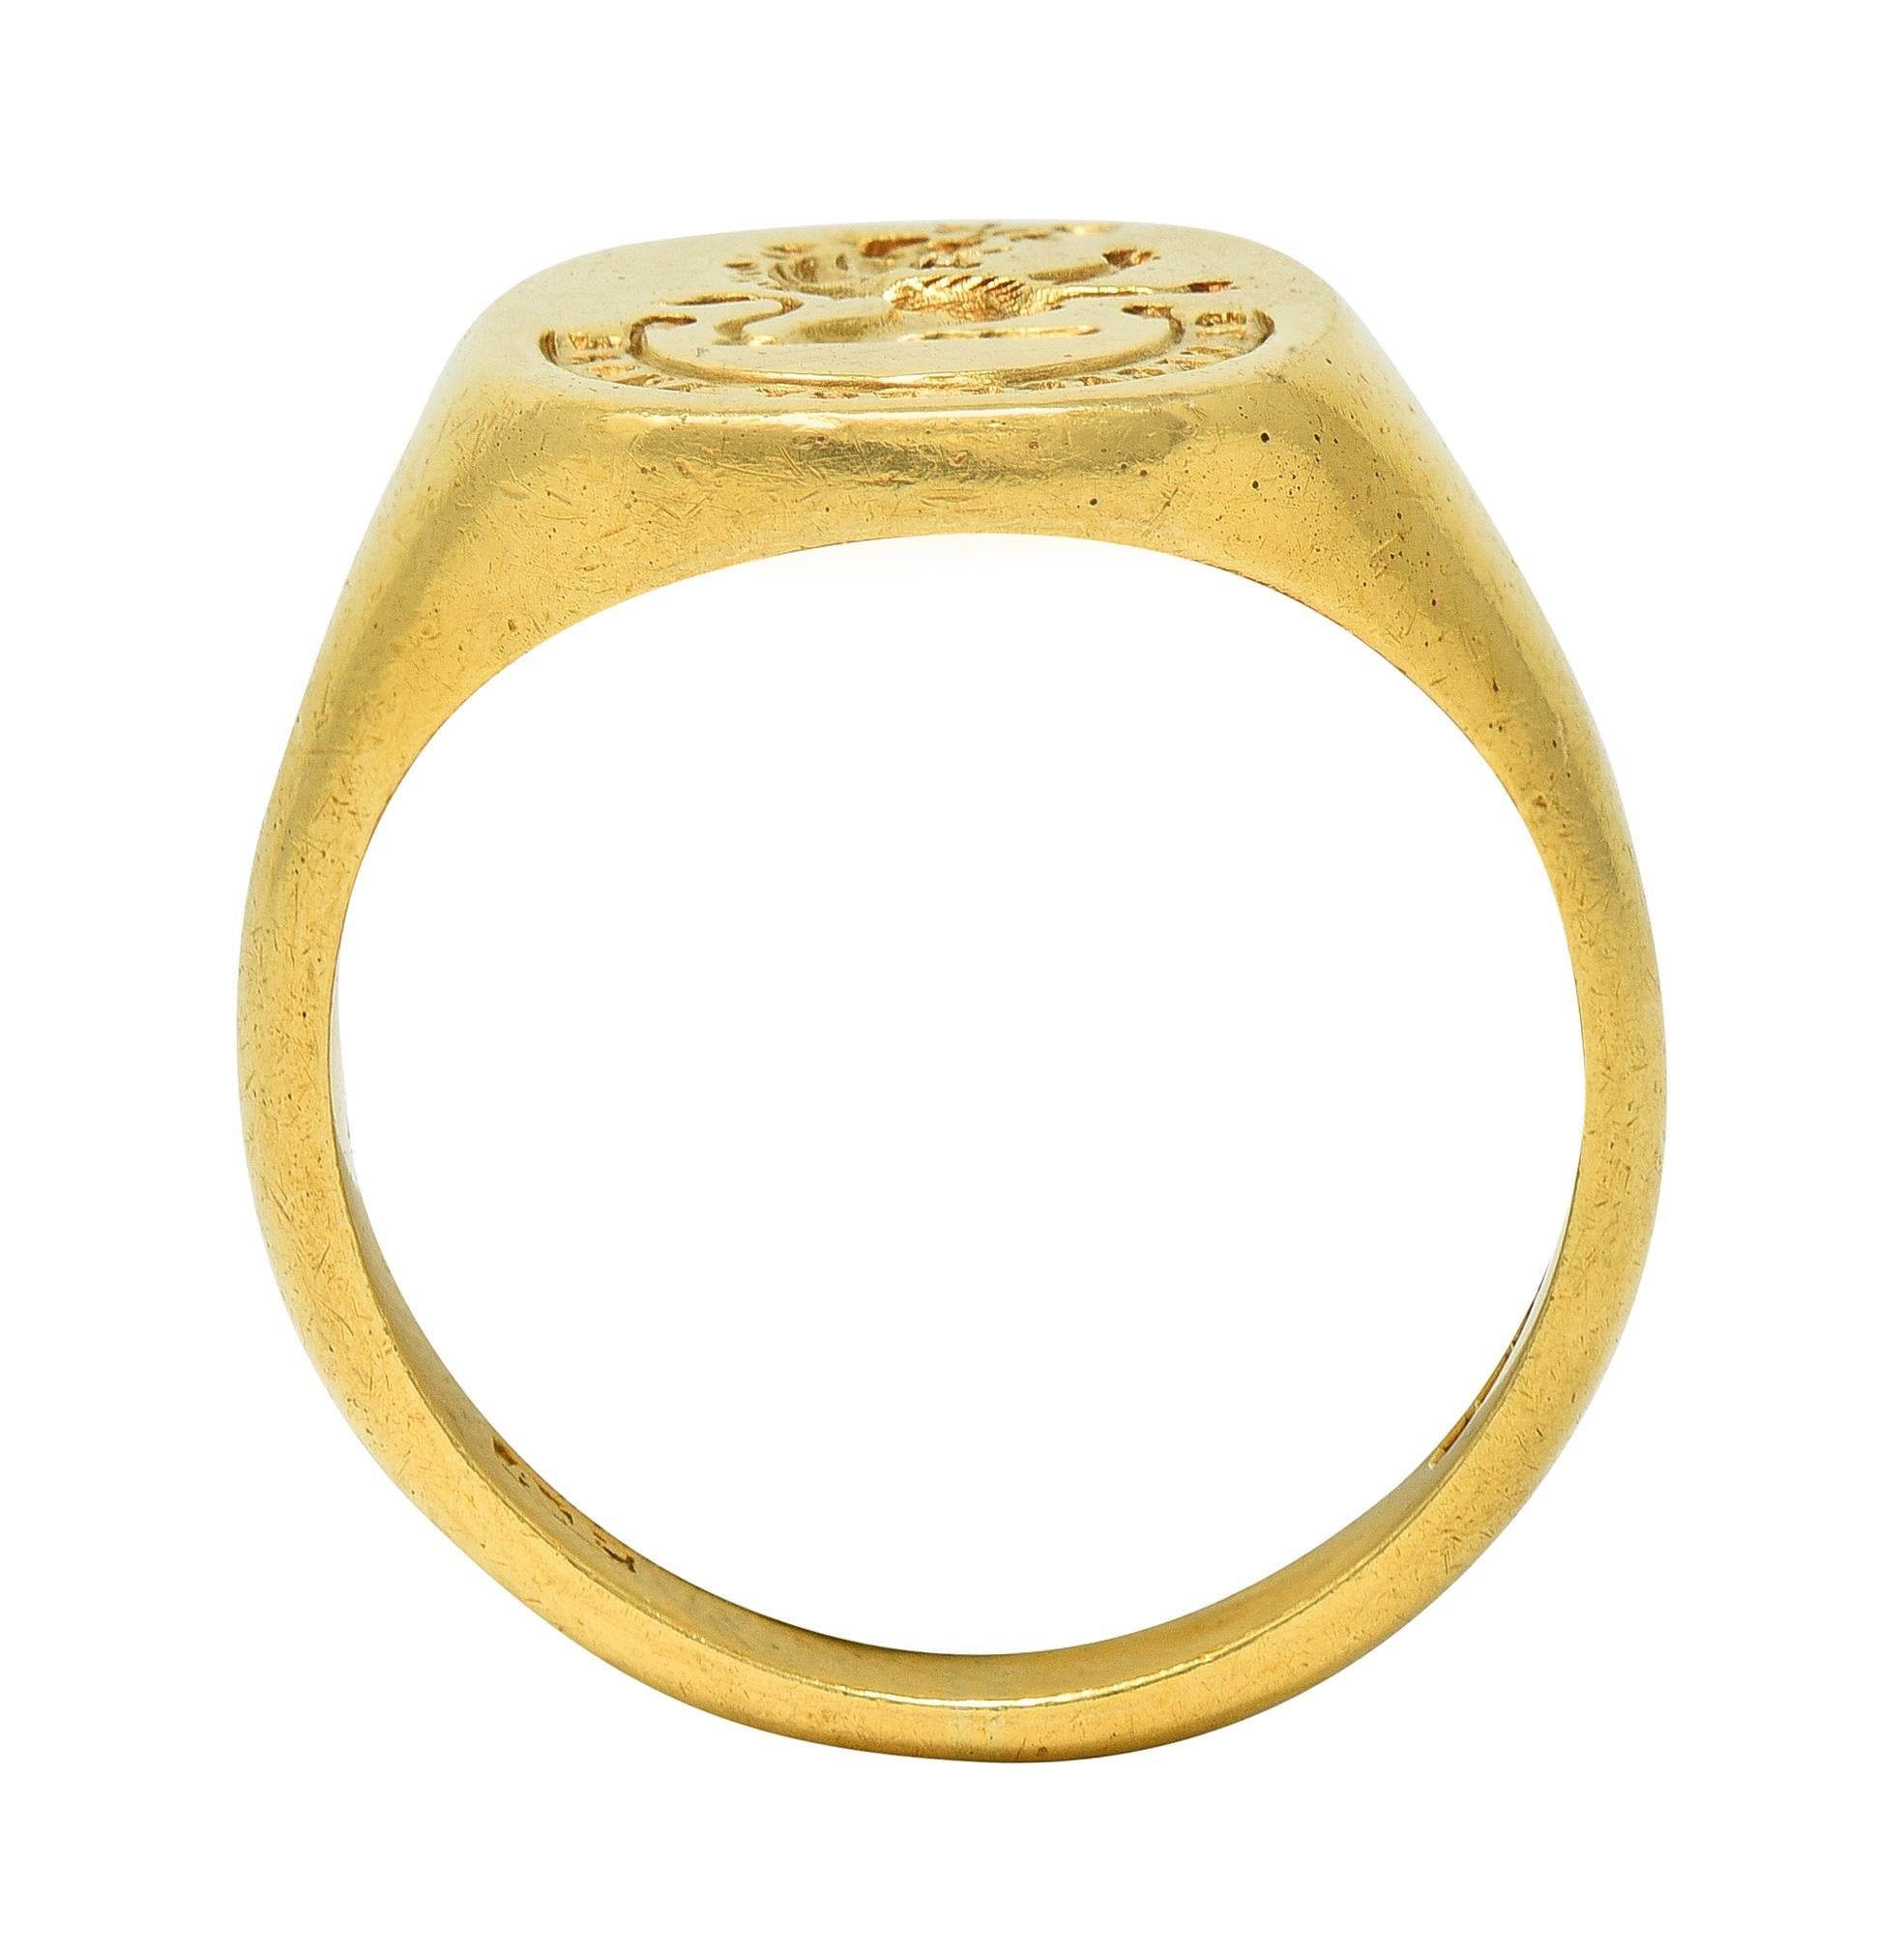 Vintage 1959 18 Karat Yellow Gold Heraldic Lion Intaglio Men's Signet Ring 6